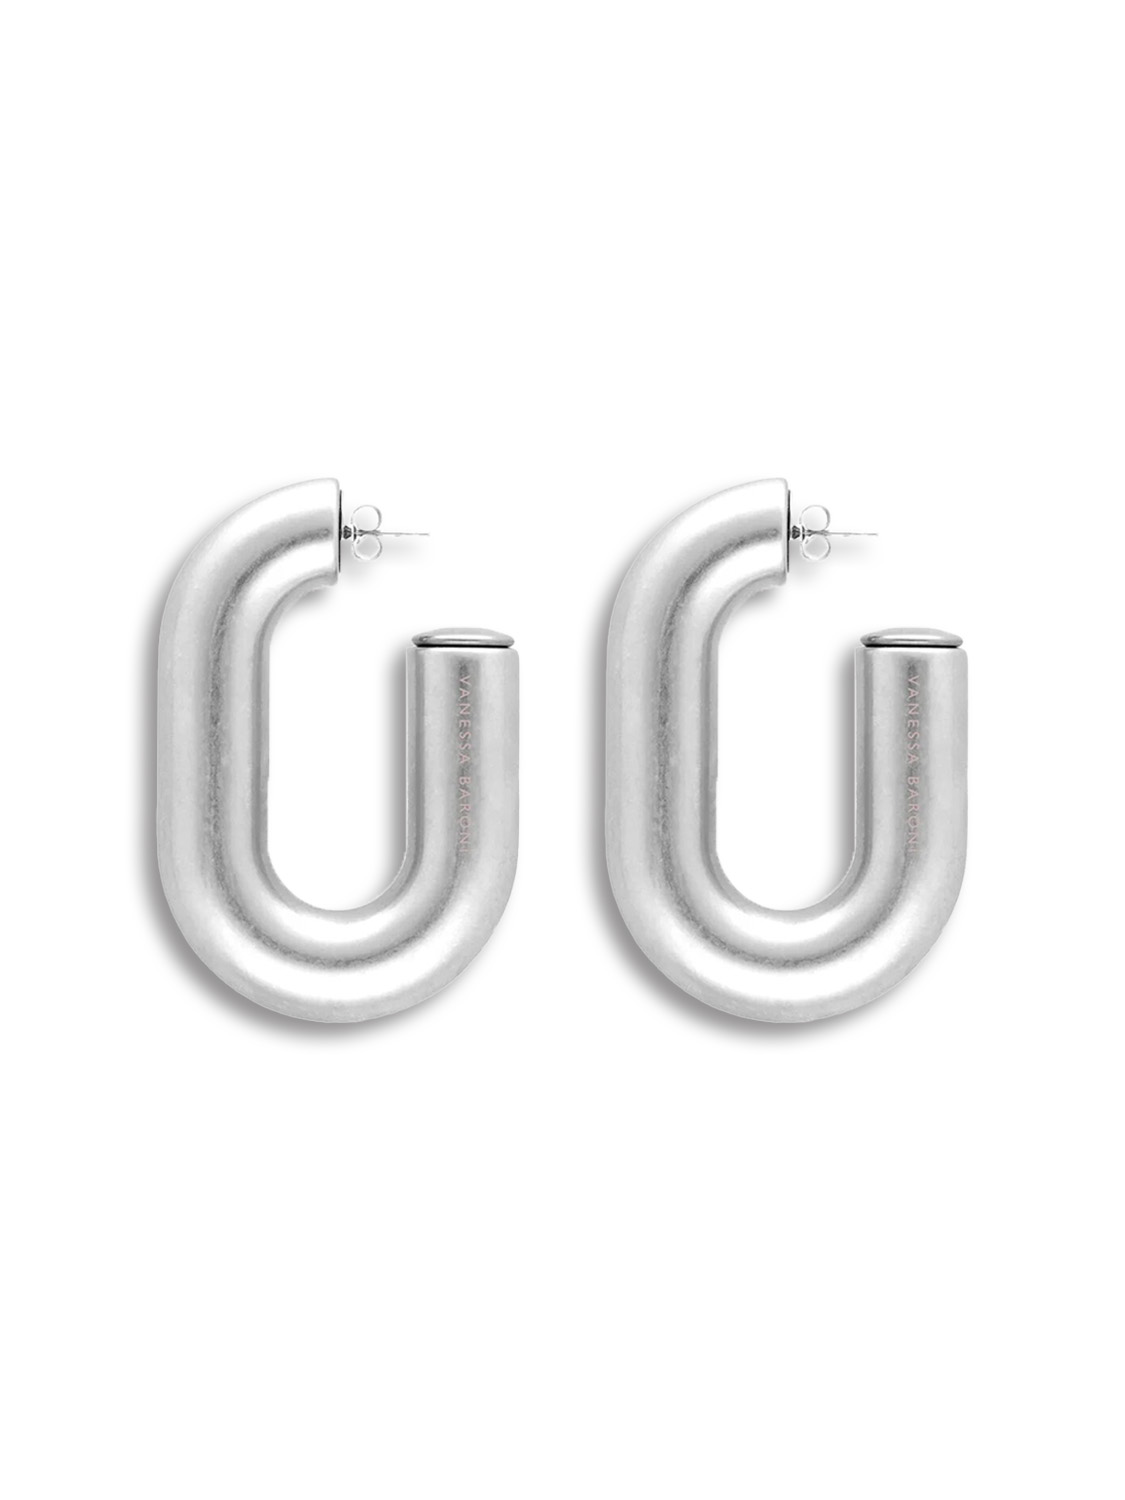 Tube Earring - Hoop shaped earrings